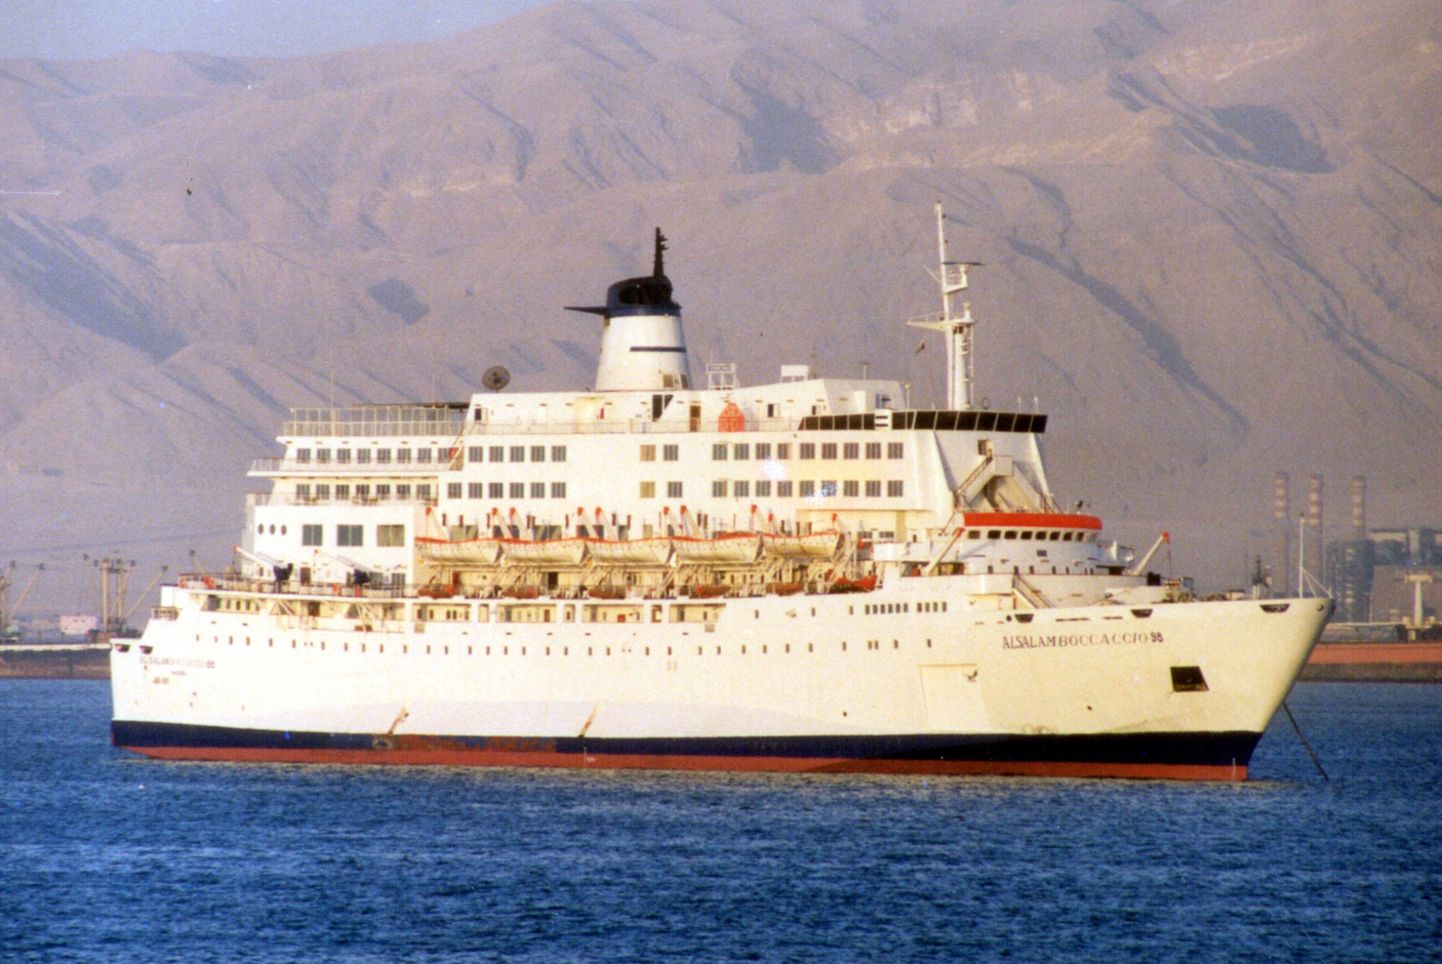 MV al-Salam Boccaccio 98 aastate eest Suessi kanalis. 2006. aasta veebruaris süttis see põlema, põhjustades rohkem kui tuhande inimese huku Punasel merel.